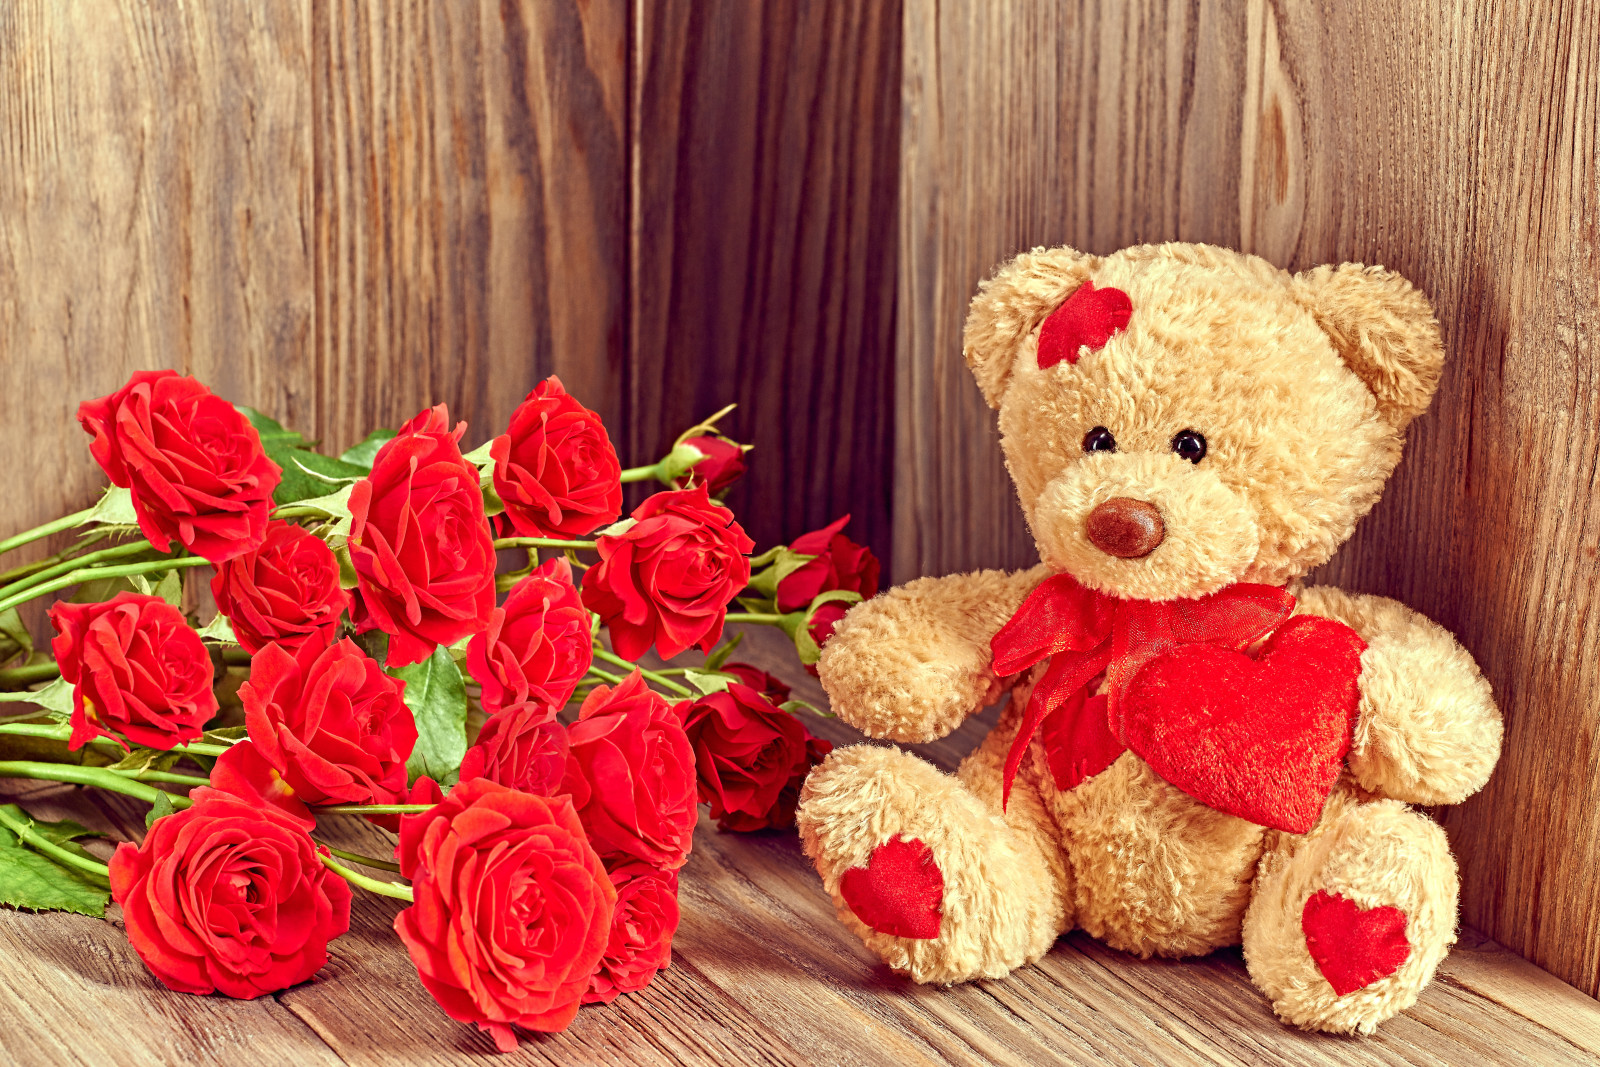 yêu và quý, lãng mạn, ngày lễ tình nhân, quà tặng, hoa hồng, chịu, tim, Teddy